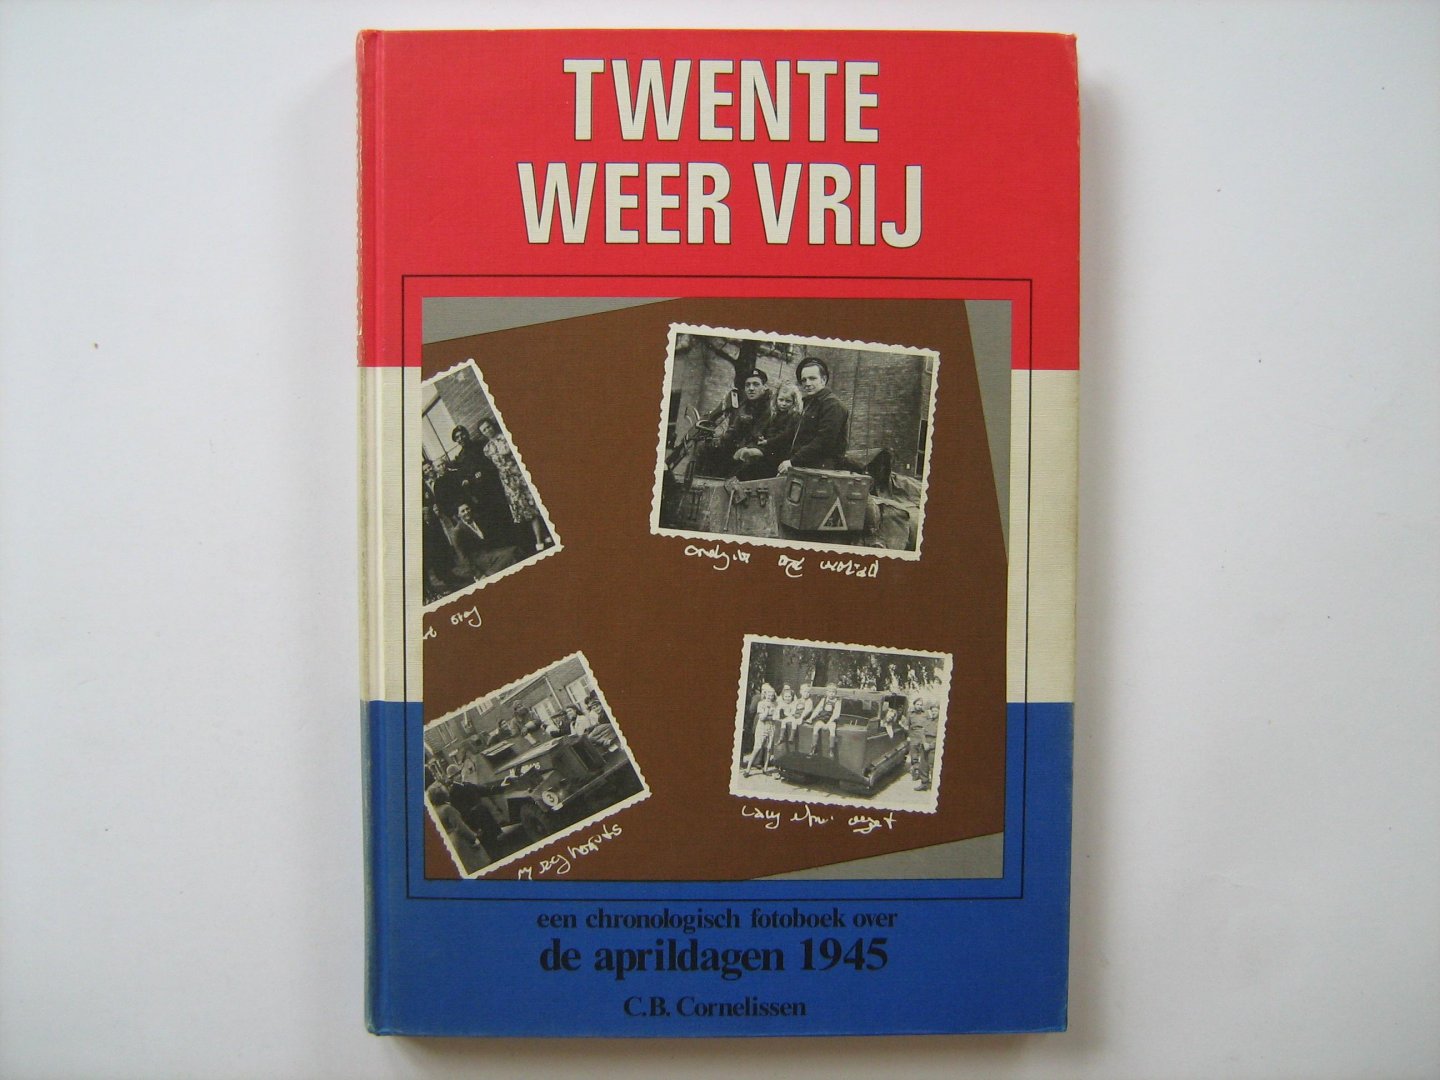 Cornelissen, C.B. - Twente weer vrij. Een chronologisch fotoboek over de aprildagen 1945 - TWENTHE